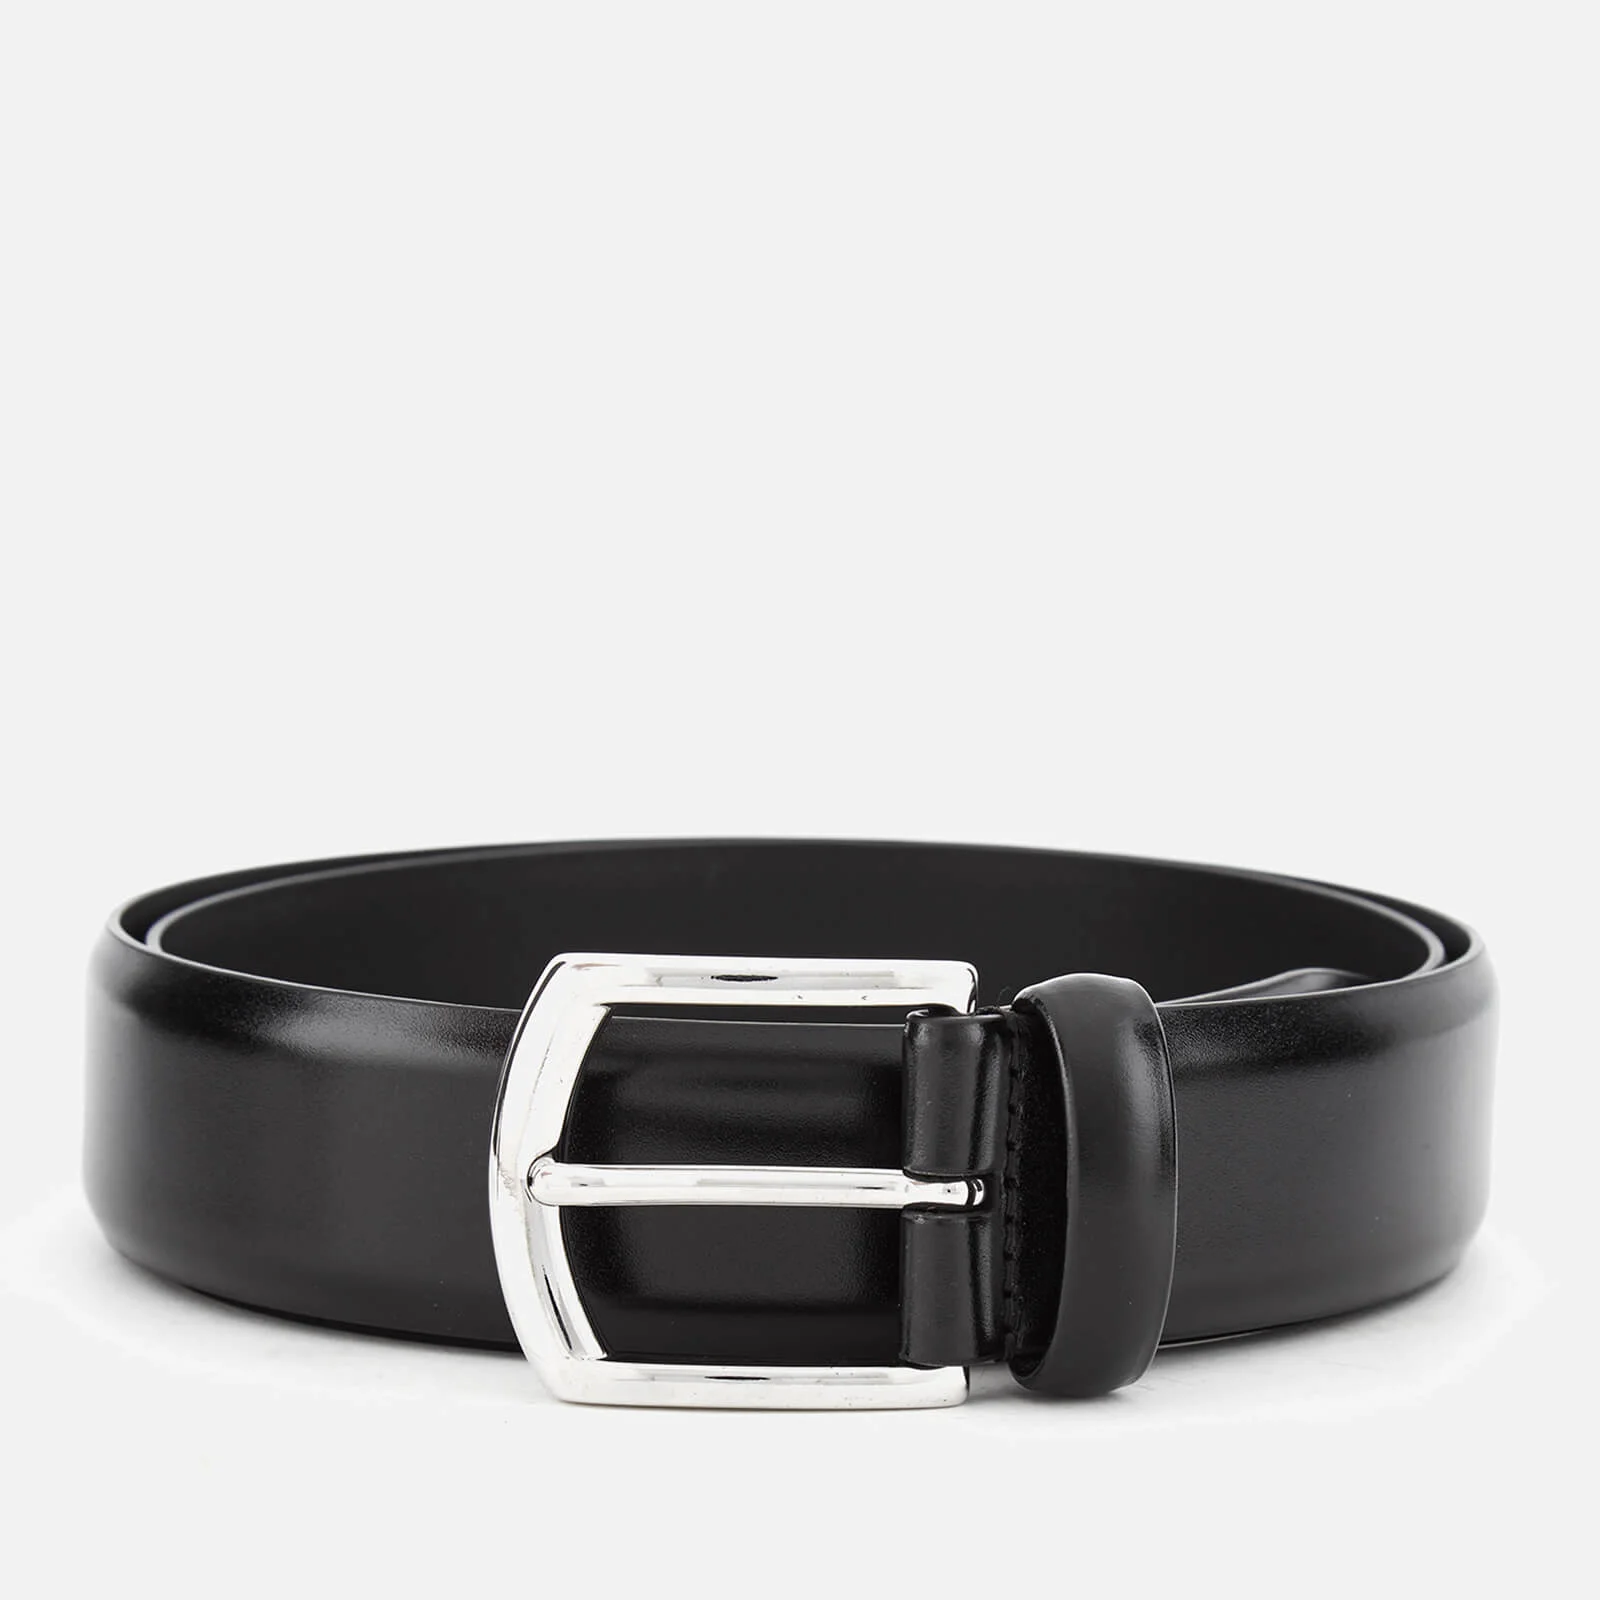 Andersons Men's Leather Belt - Black Image 1